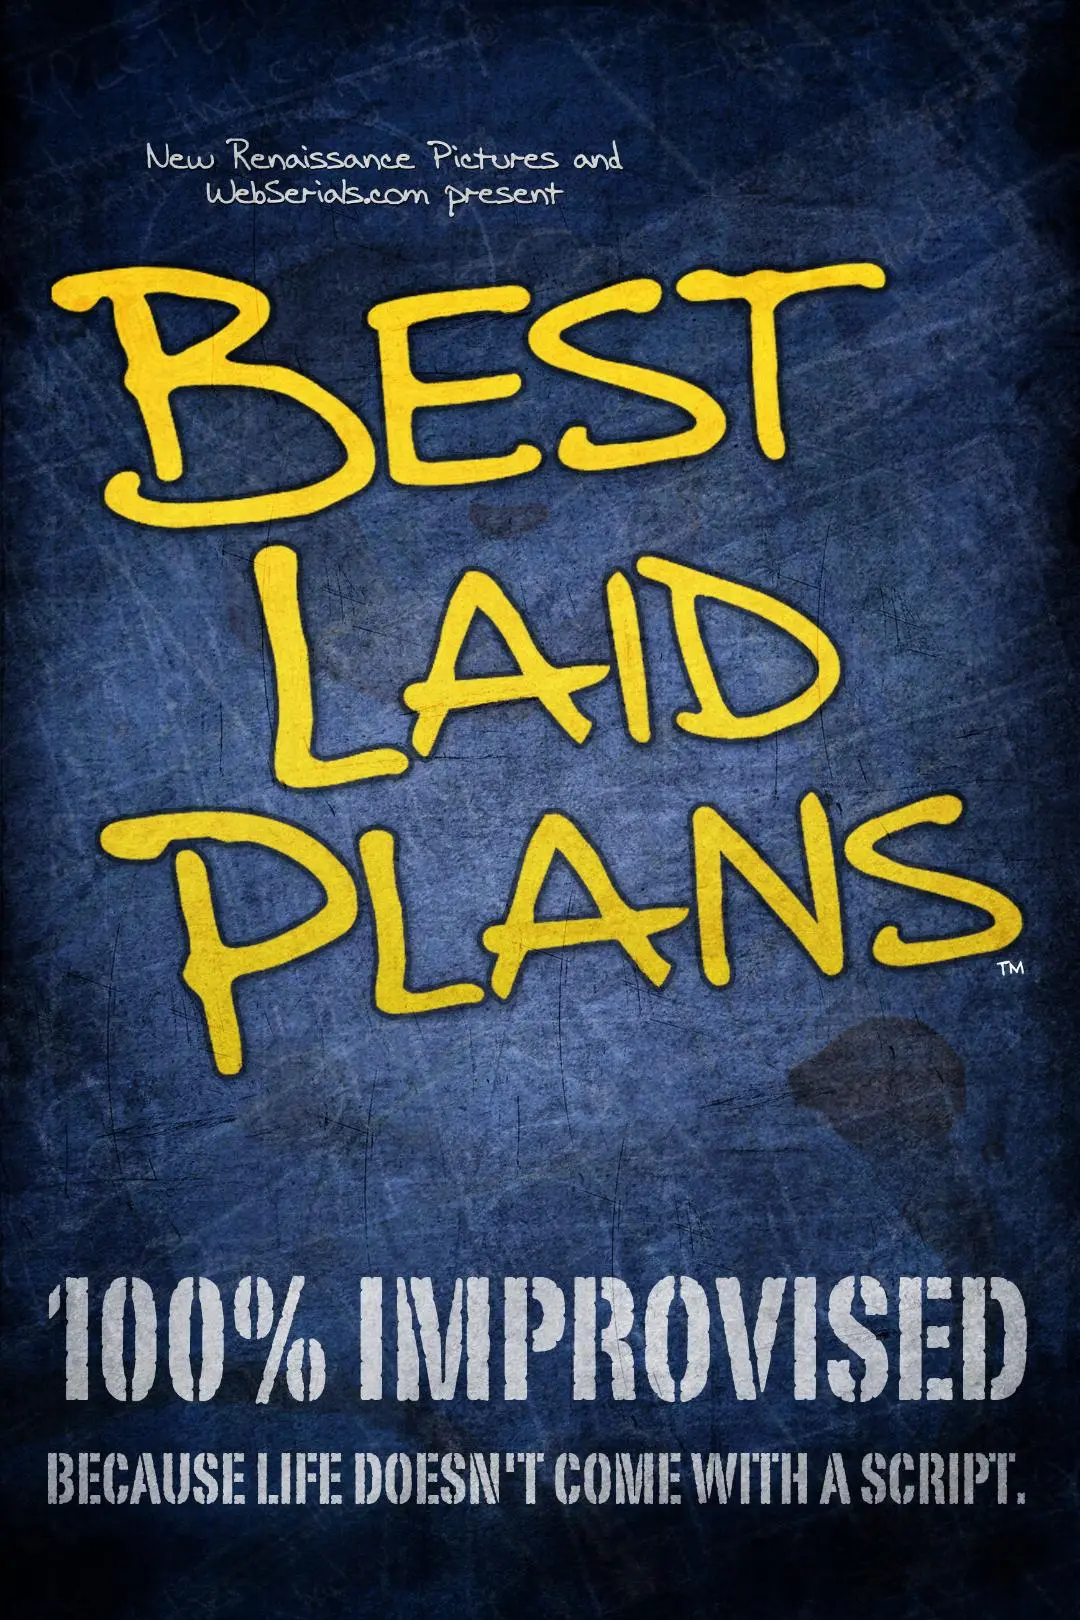 Best Laid Plans_peliplat